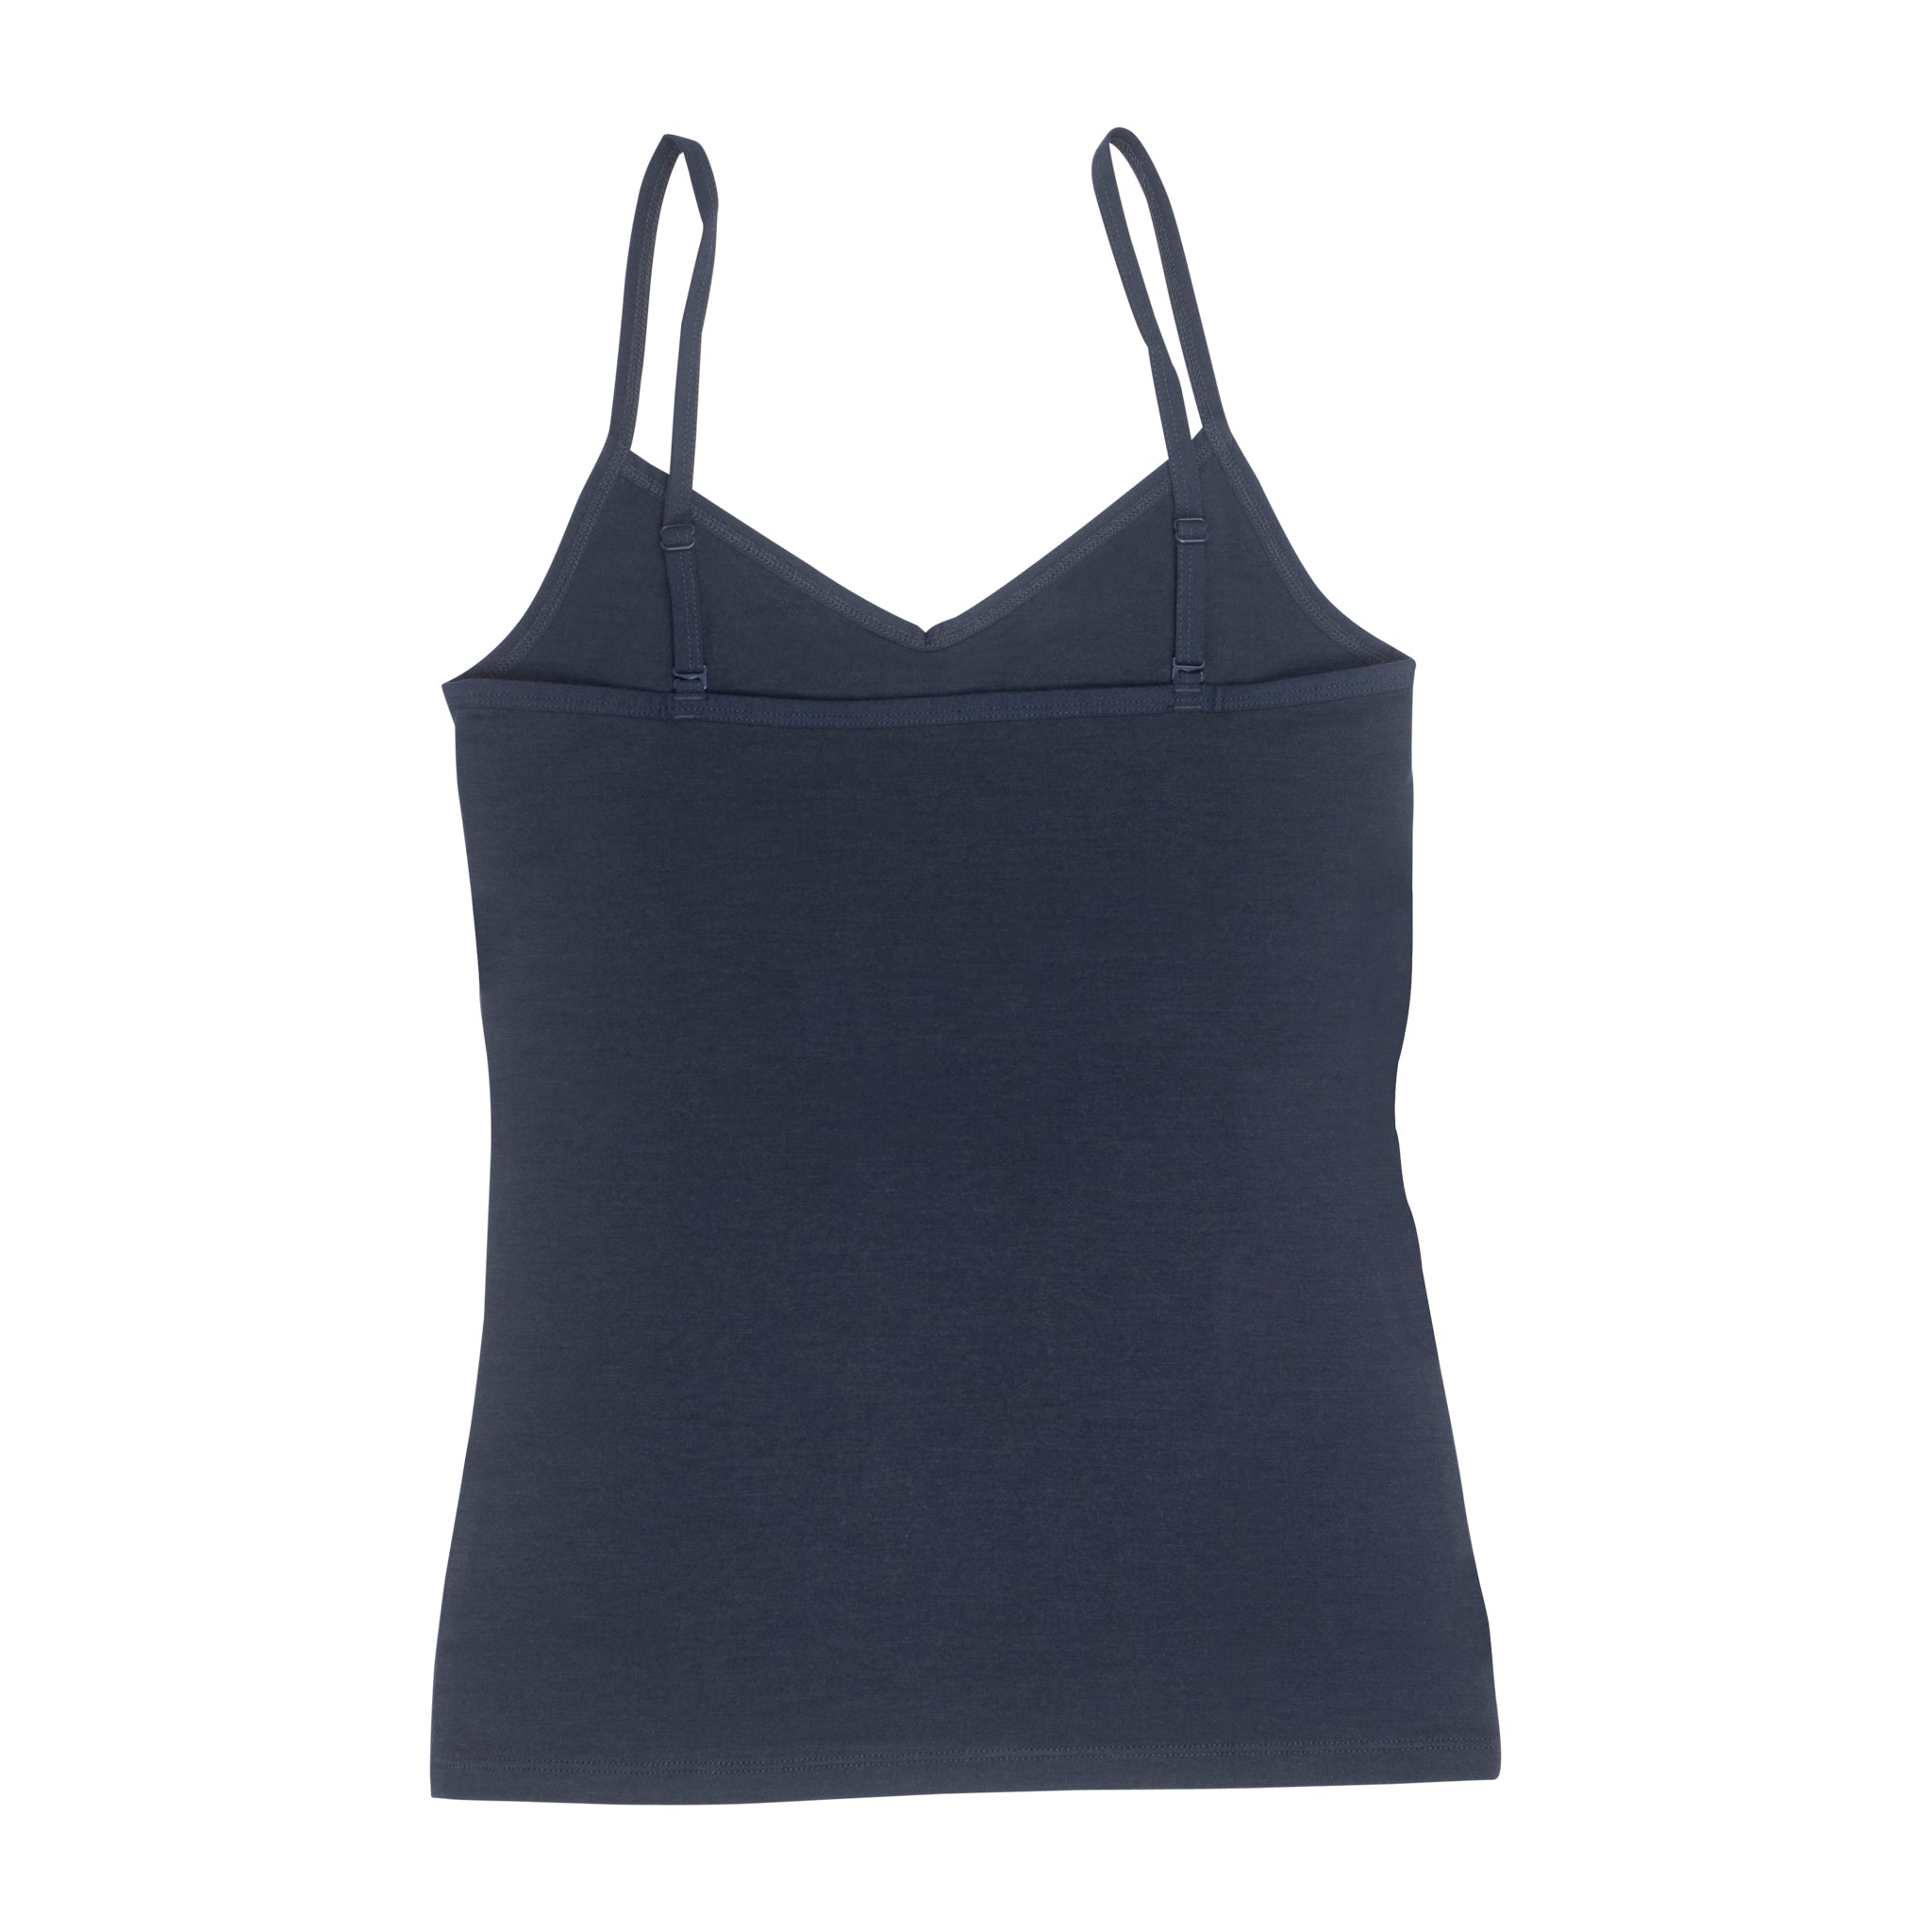 Merino Wool Women Sleeveless Top, T-Shirt, Sleep, Underwear, Yoga